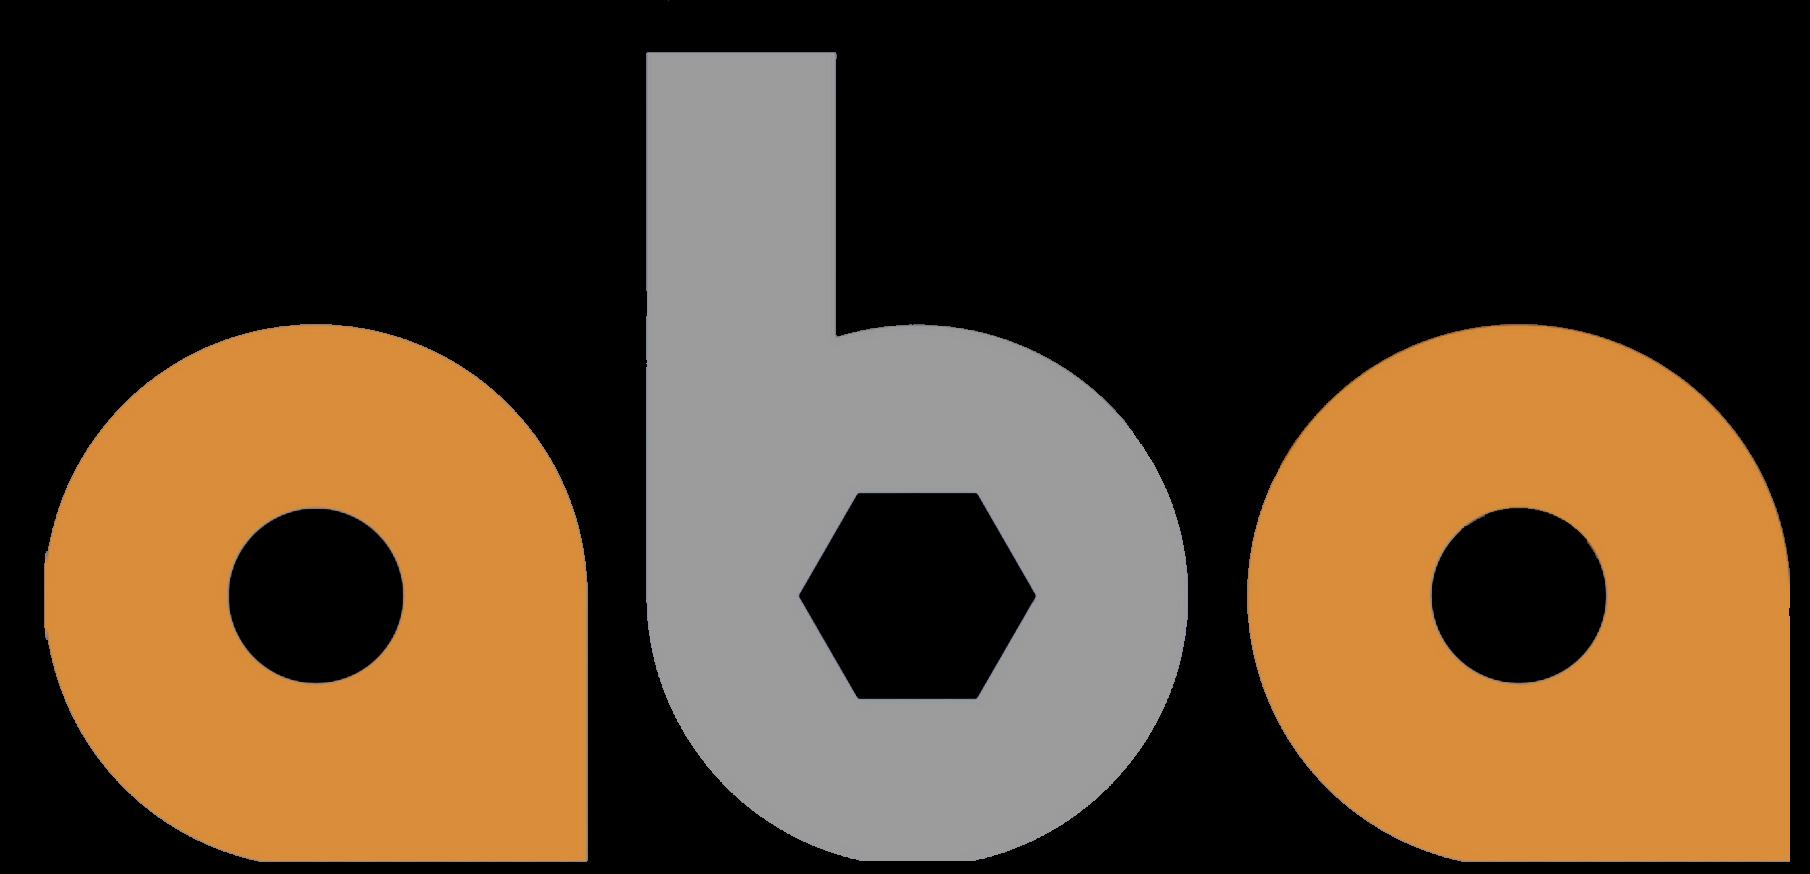 Aba (株式会社aba)_logo